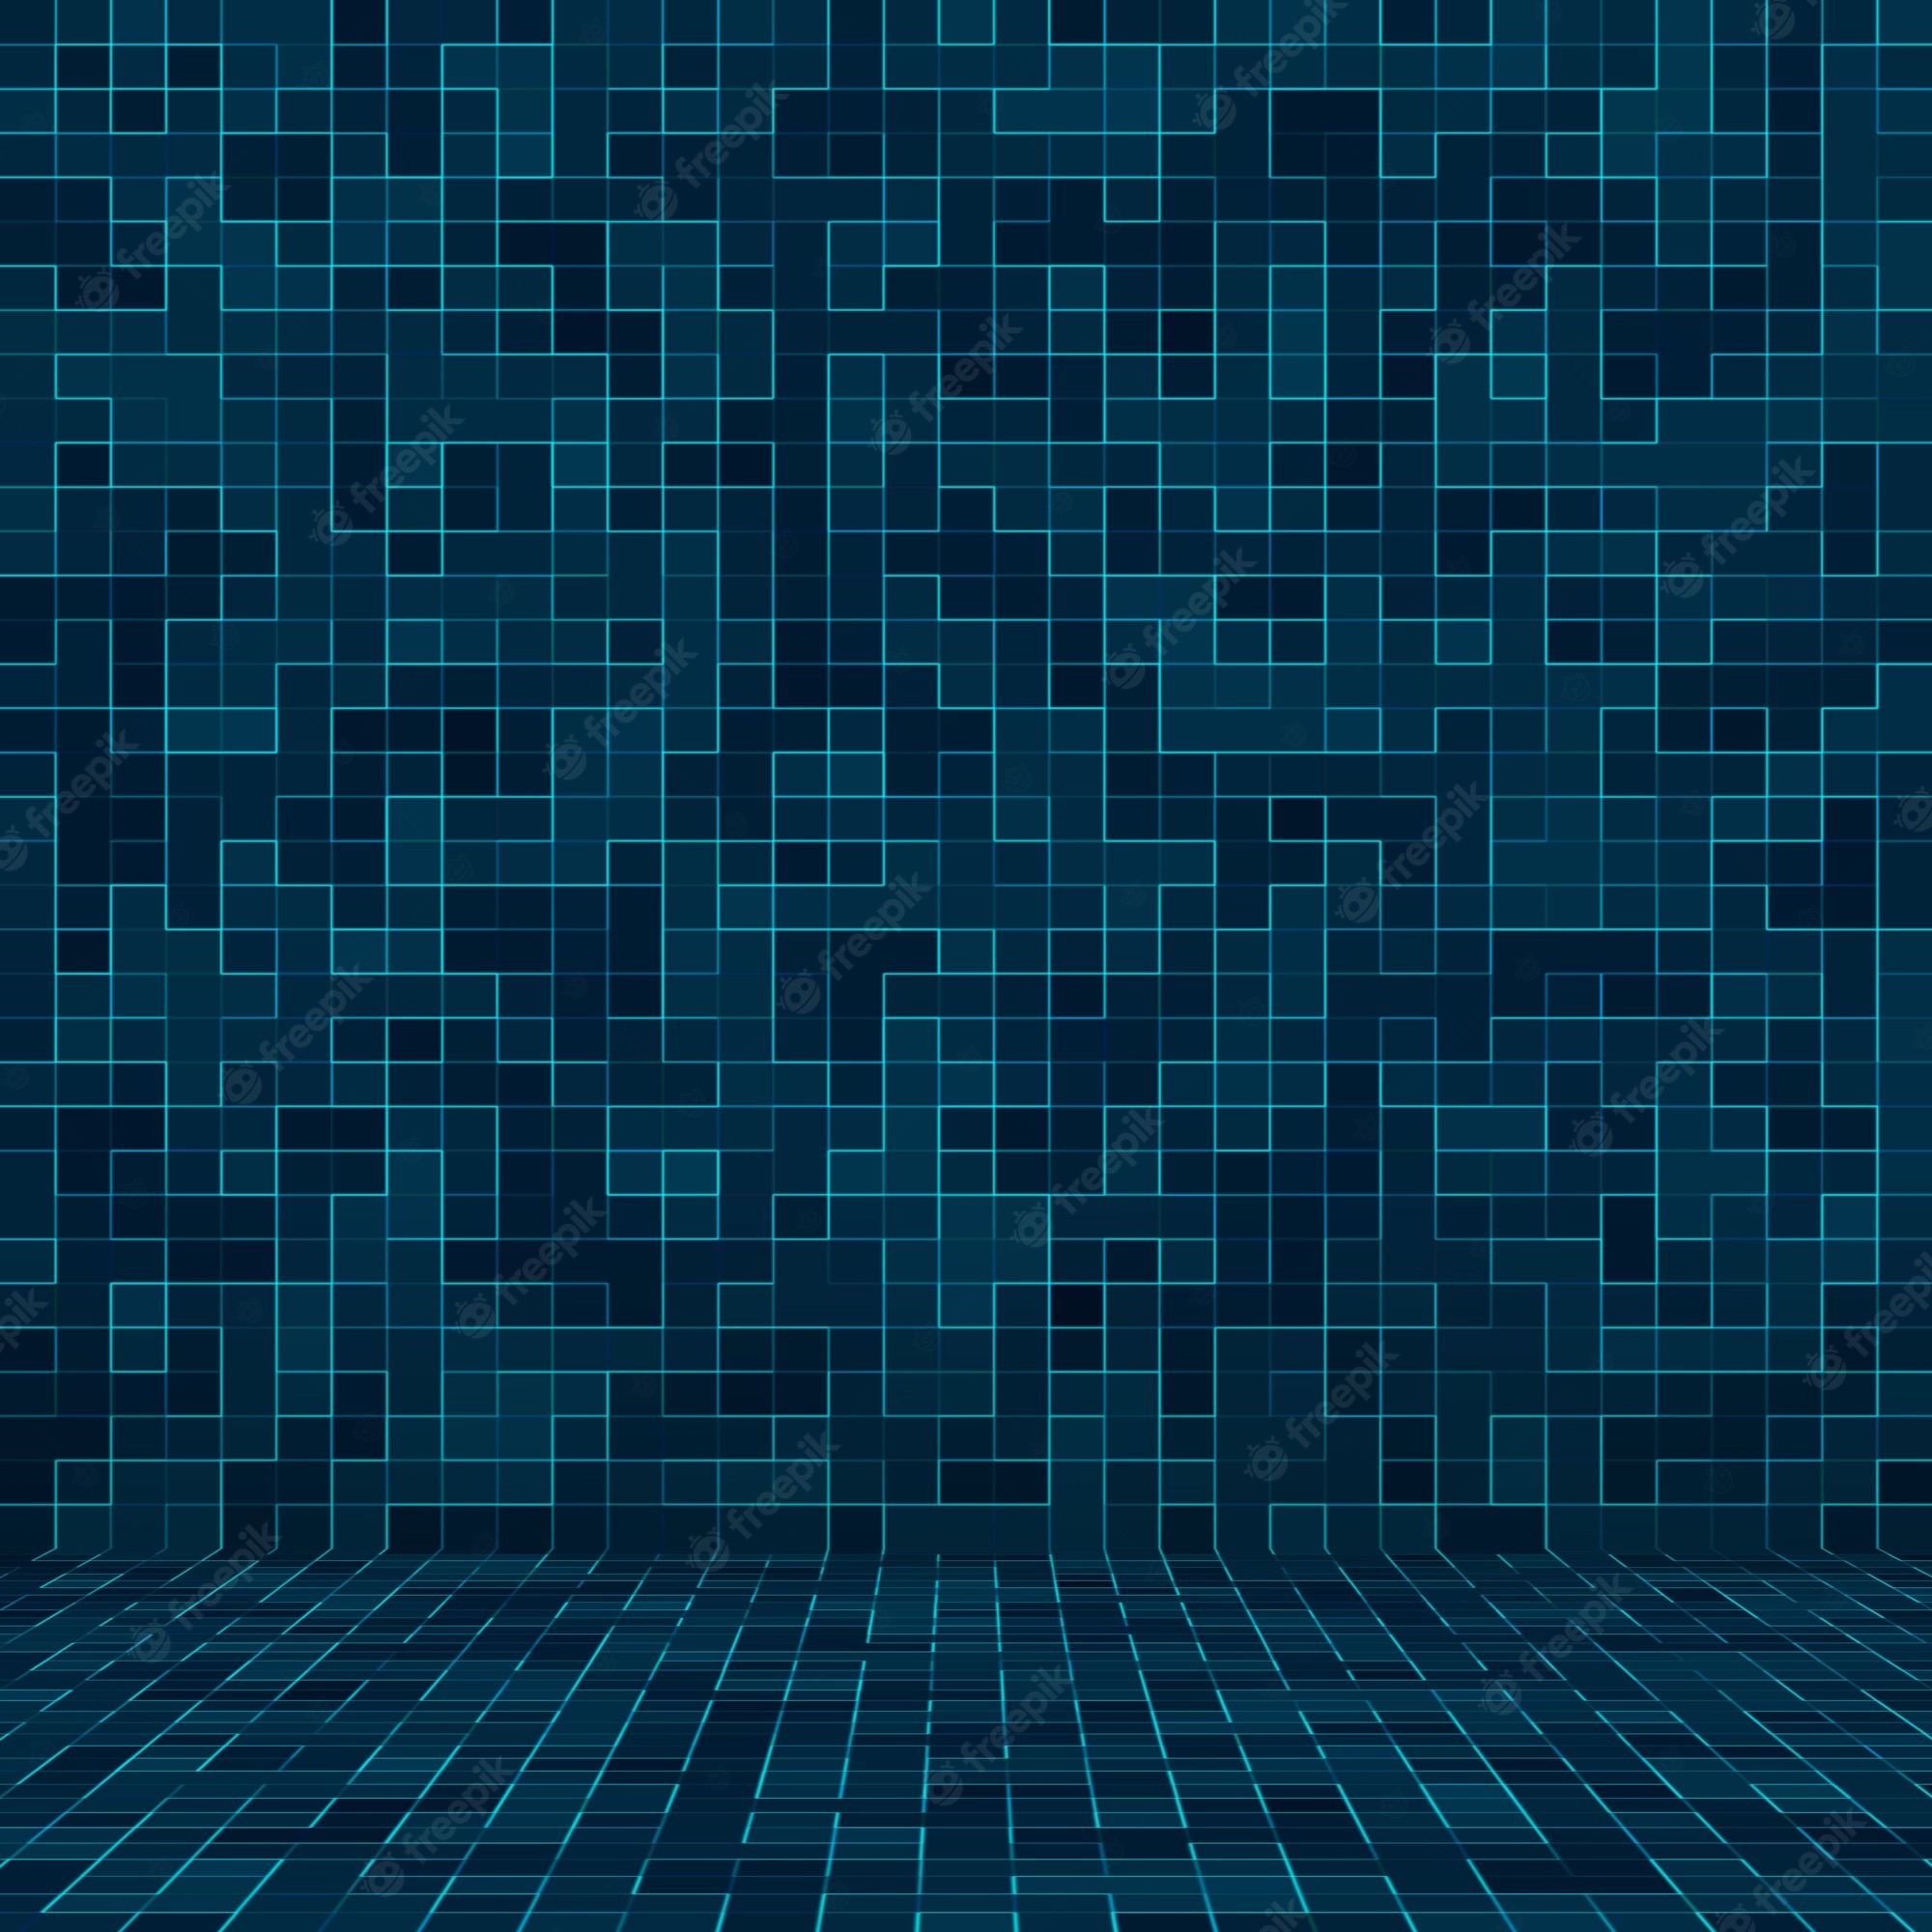 Blue tile background images